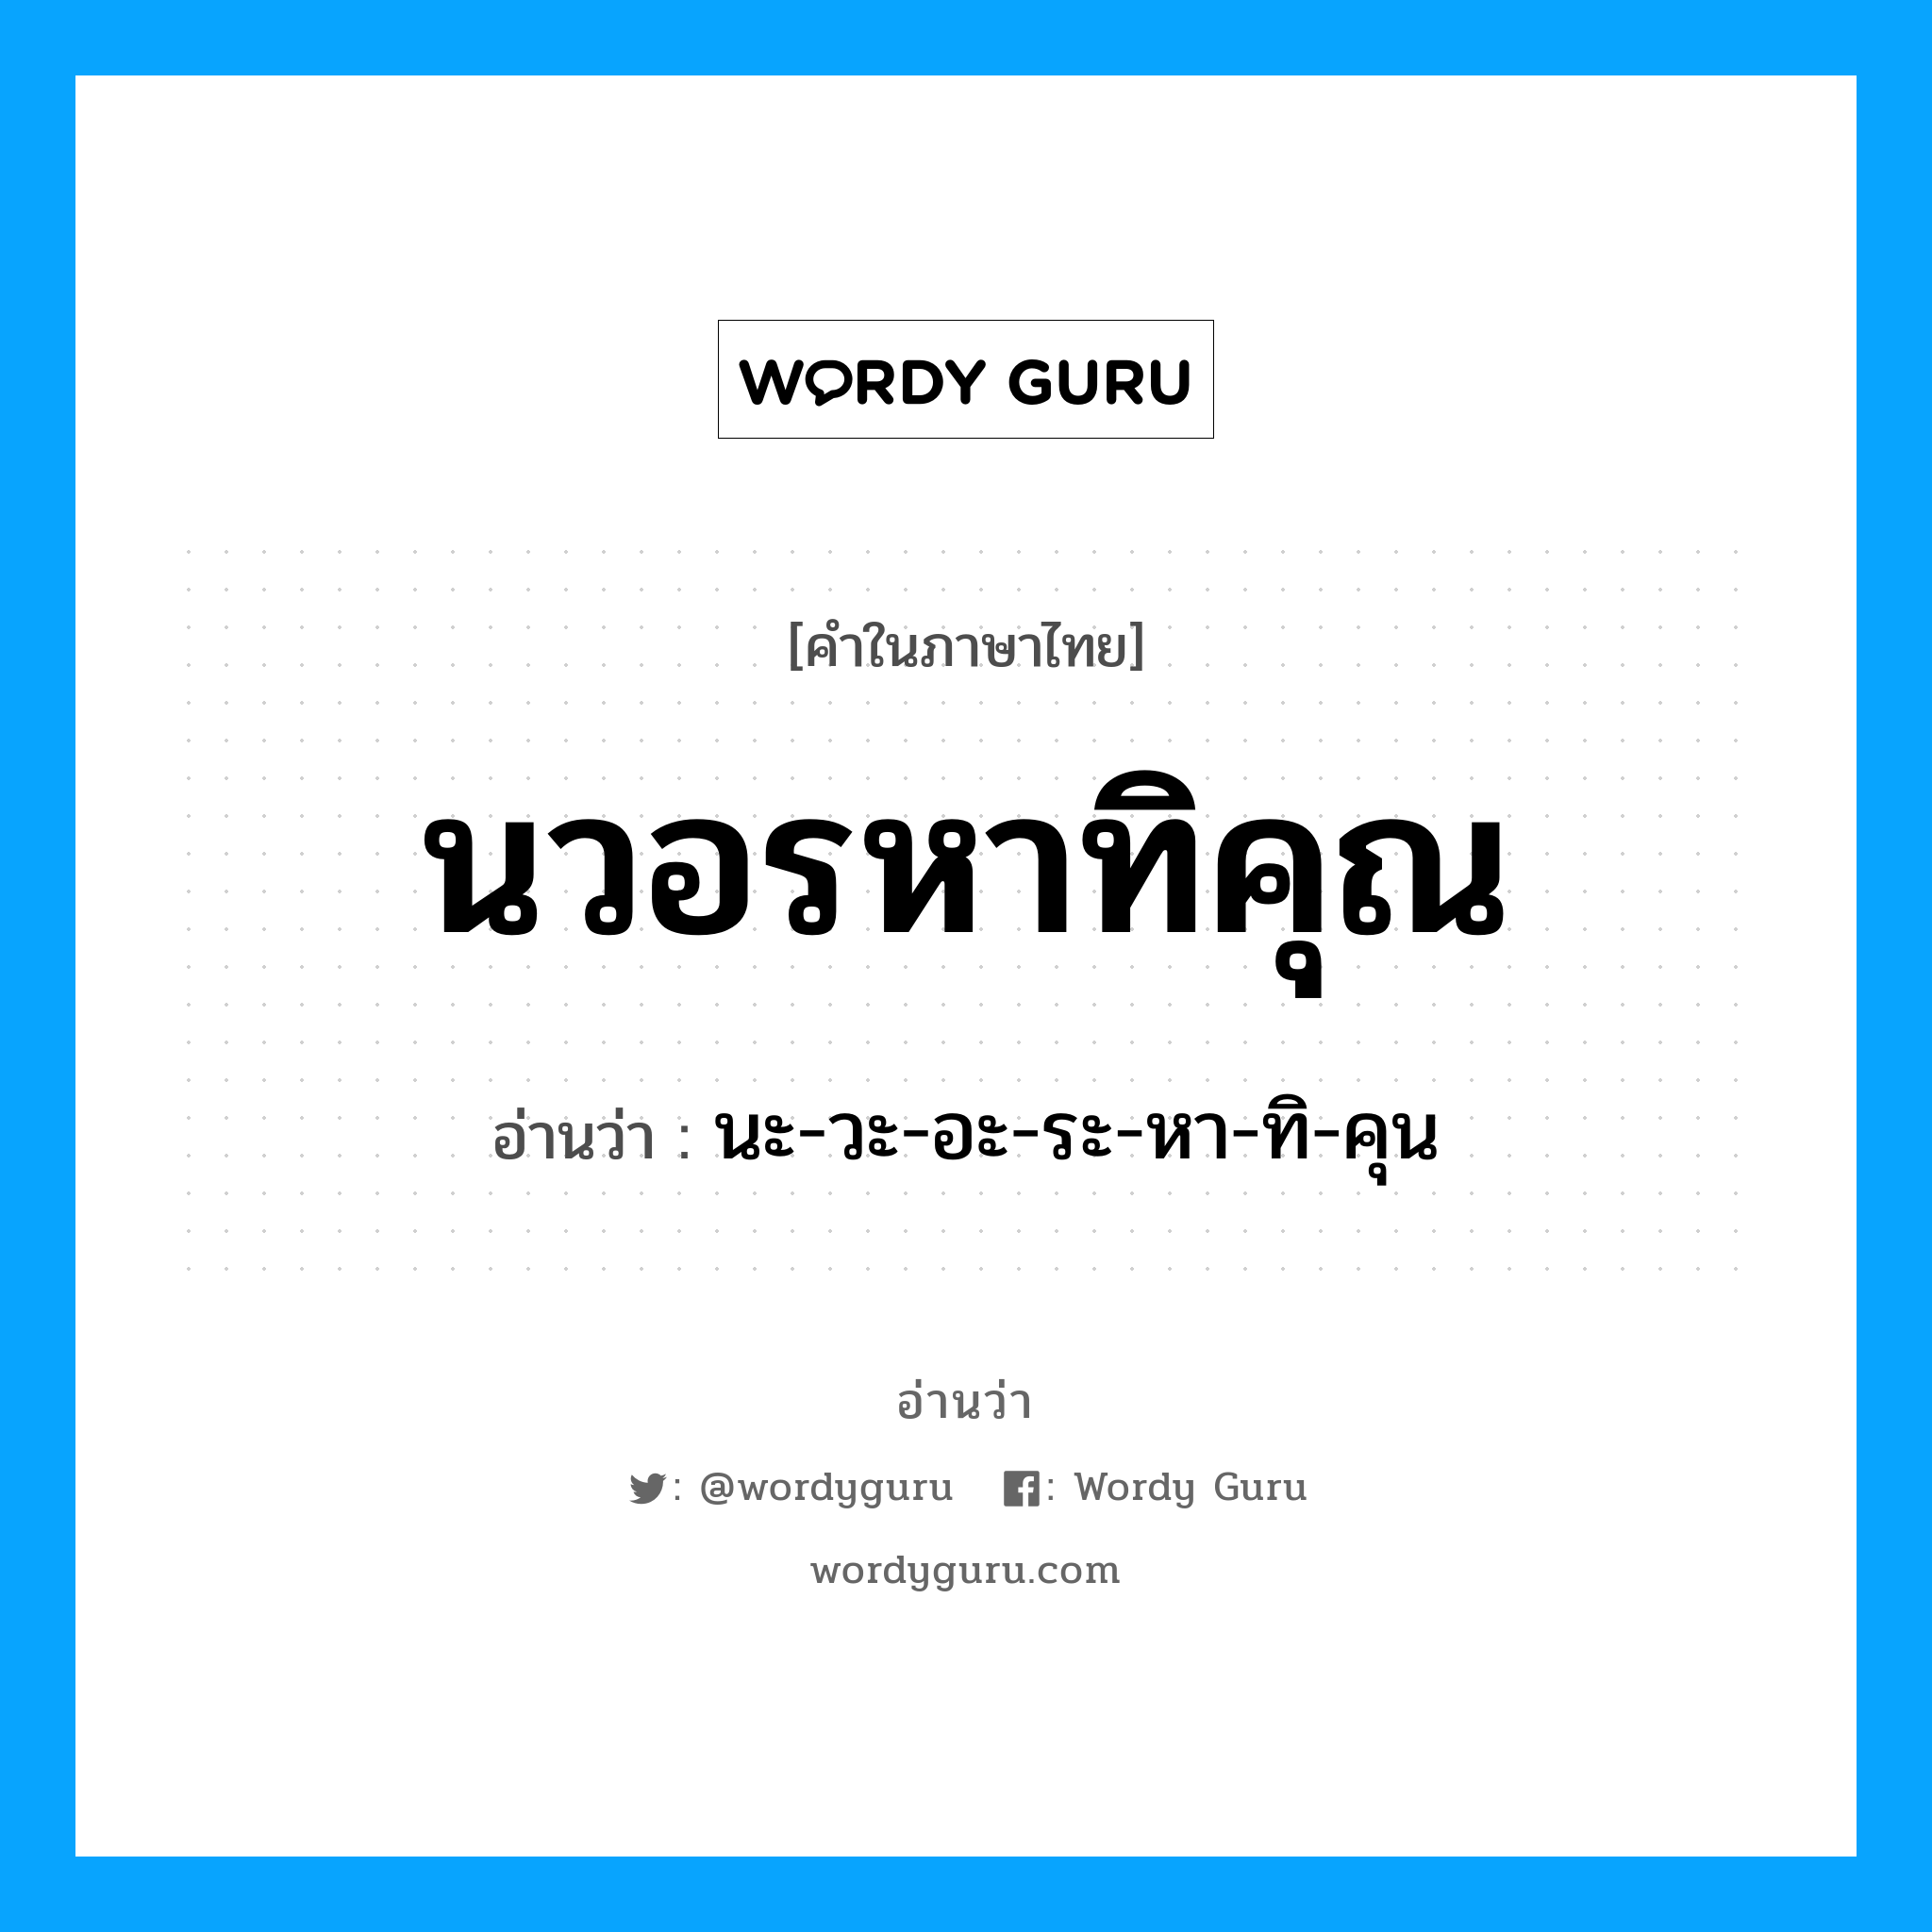 นะ-วะ-อะ-ระ-หา-ทิ-คุน เป็นคำอ่านของคำไหน?, คำในภาษาไทย นะ-วะ-อะ-ระ-หา-ทิ-คุน อ่านว่า นวอรหาทิคุณ